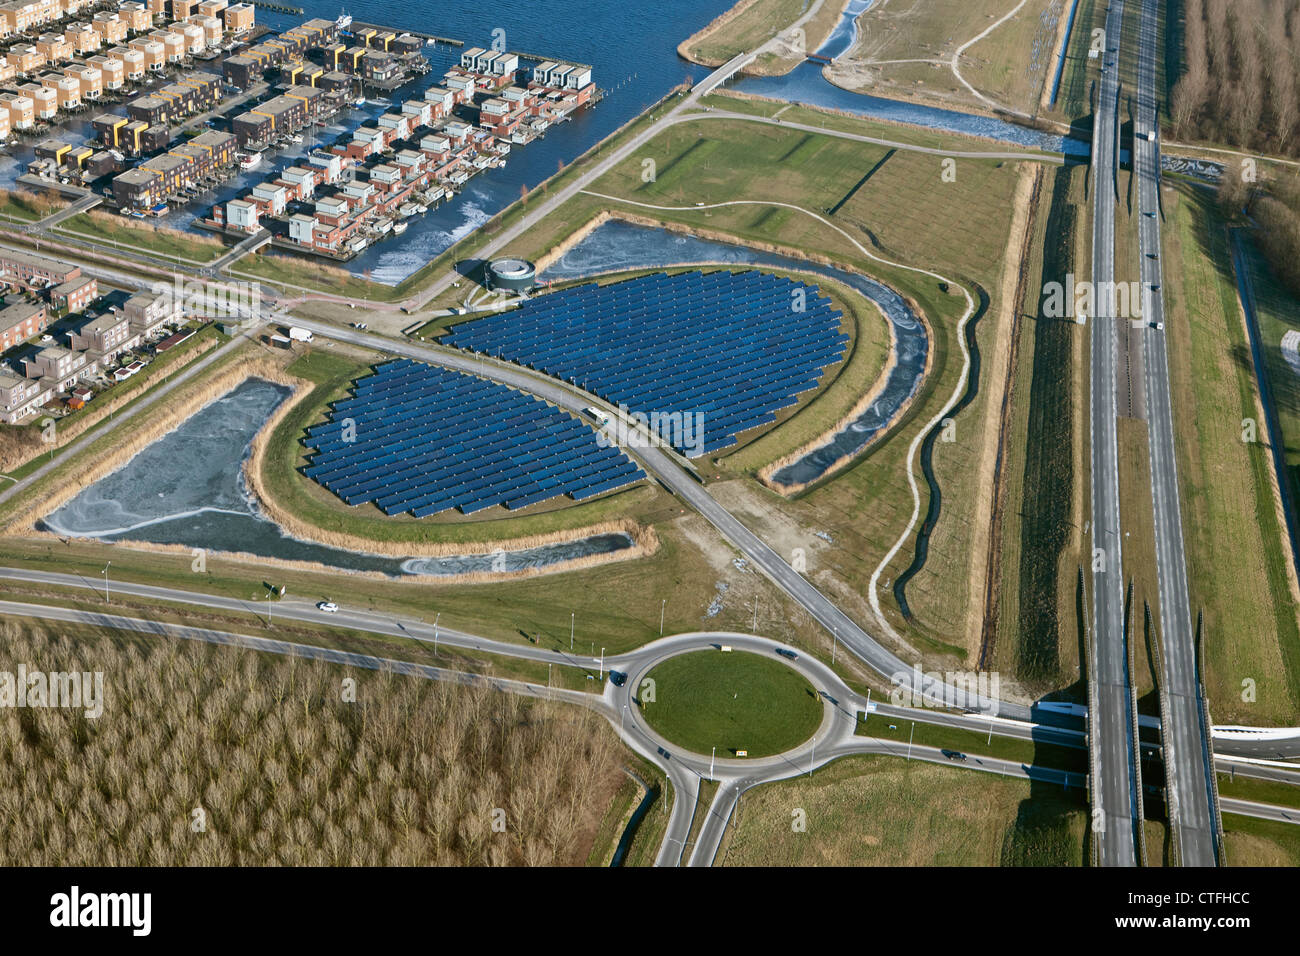 I Paesi Bassi, Almere, NUON isola solare. Pannelli solari. Antenna. Foto Stock